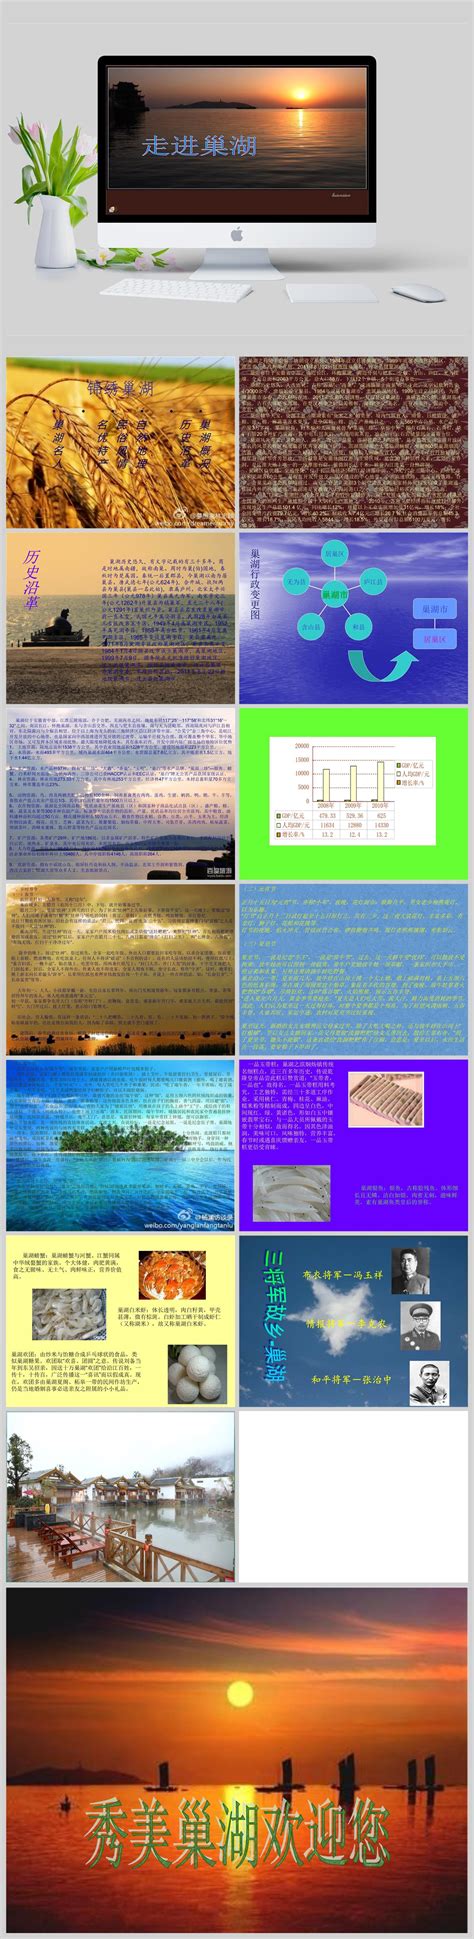 【暑期“三下乡”】文传学院学子探寻巢湖渔网制作非遗文化